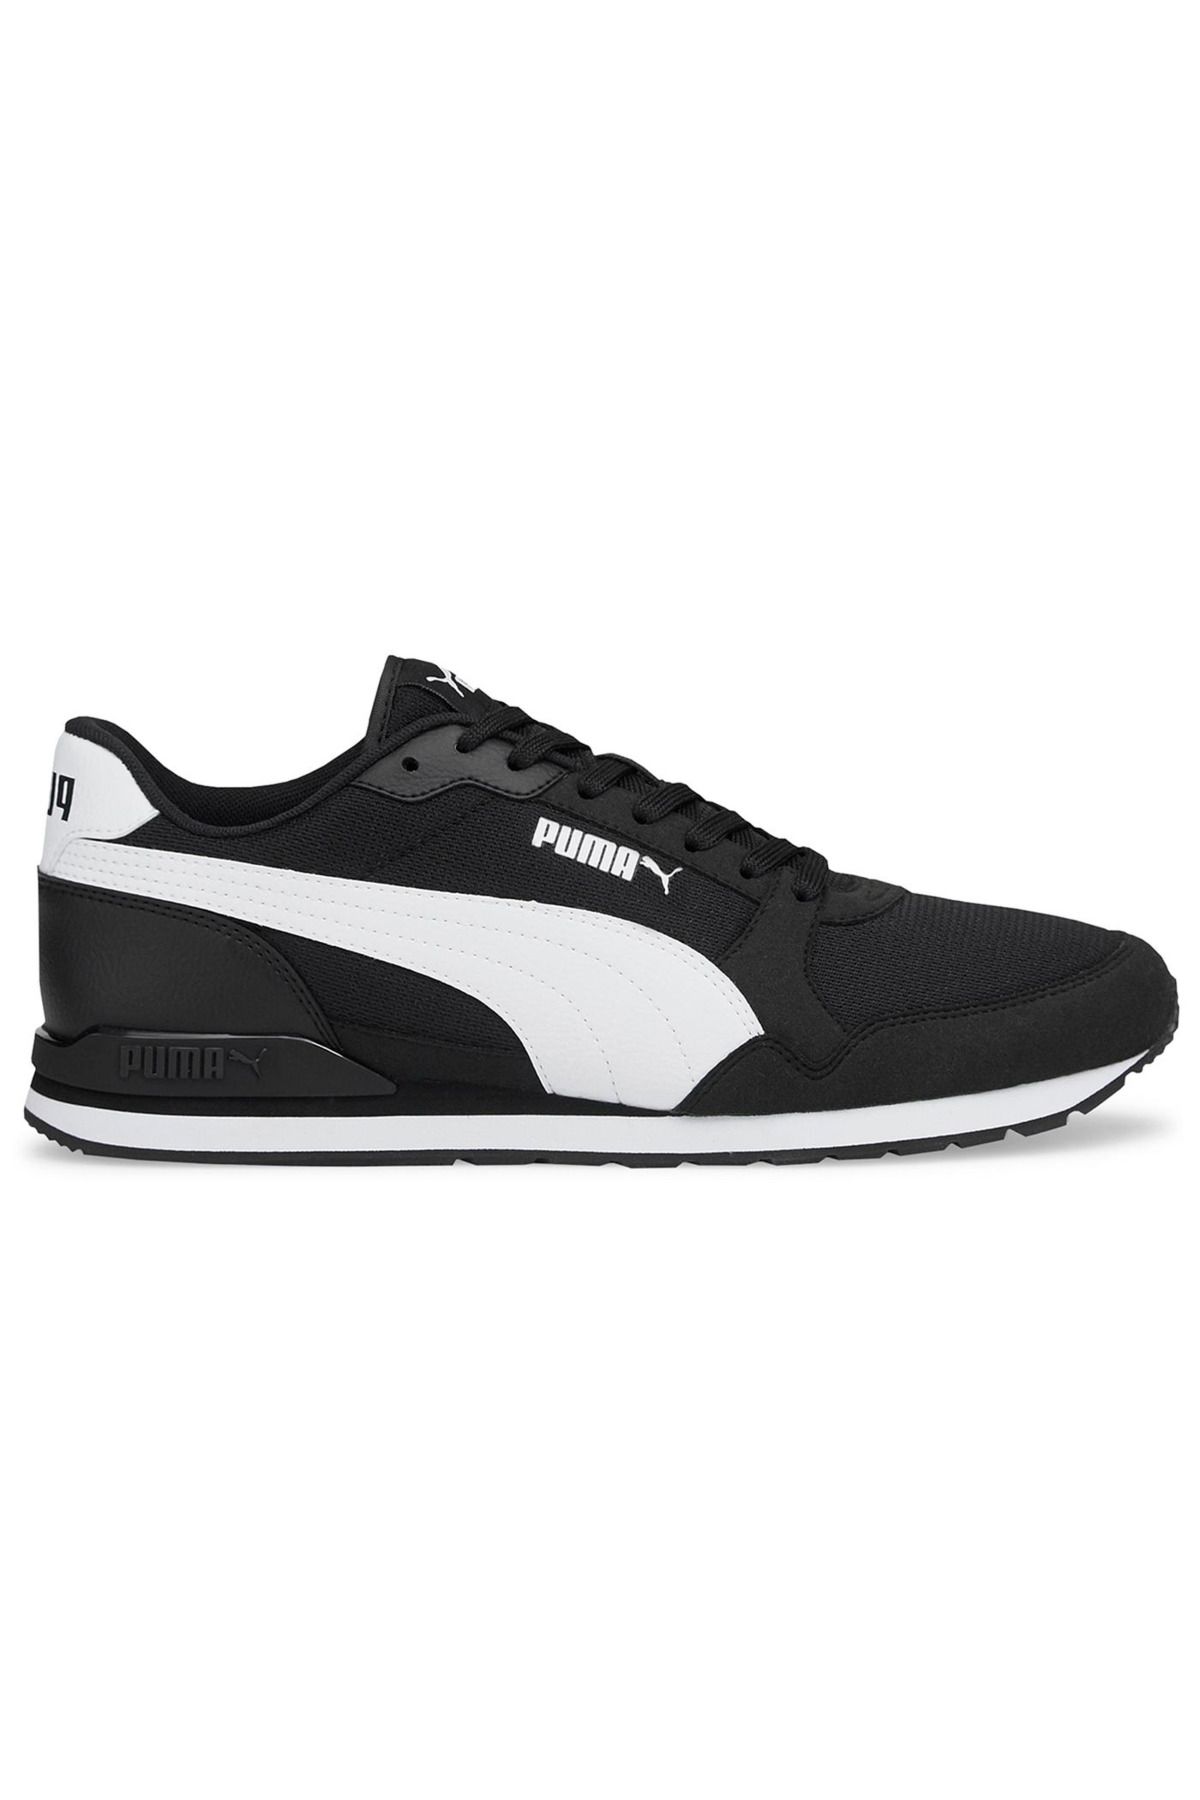 Puma Günlük Rahat Sneaker Unisex Spor Ayakkabı